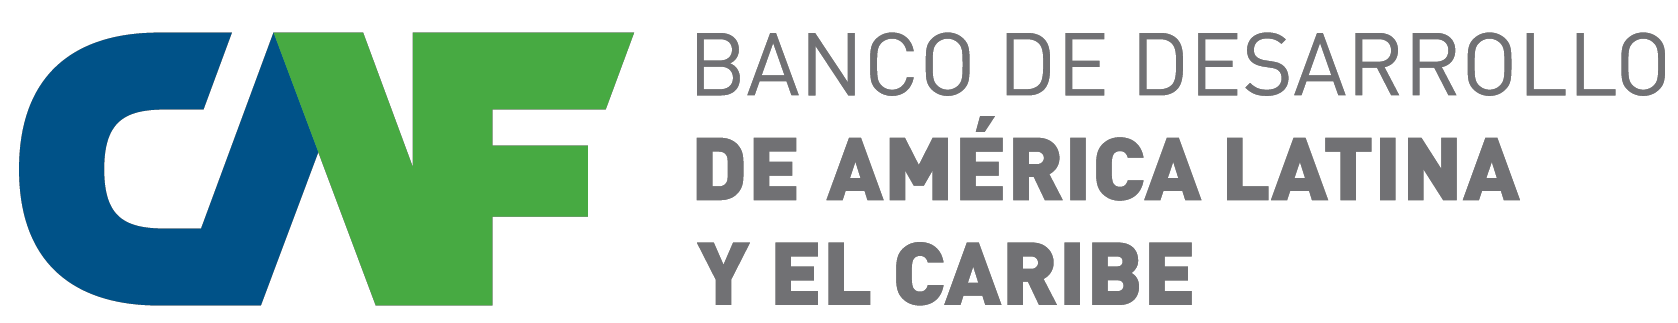 Logotipo_CAF_-_Banco_de_Desarrollo_de_América_Latina_y_el_Caribe